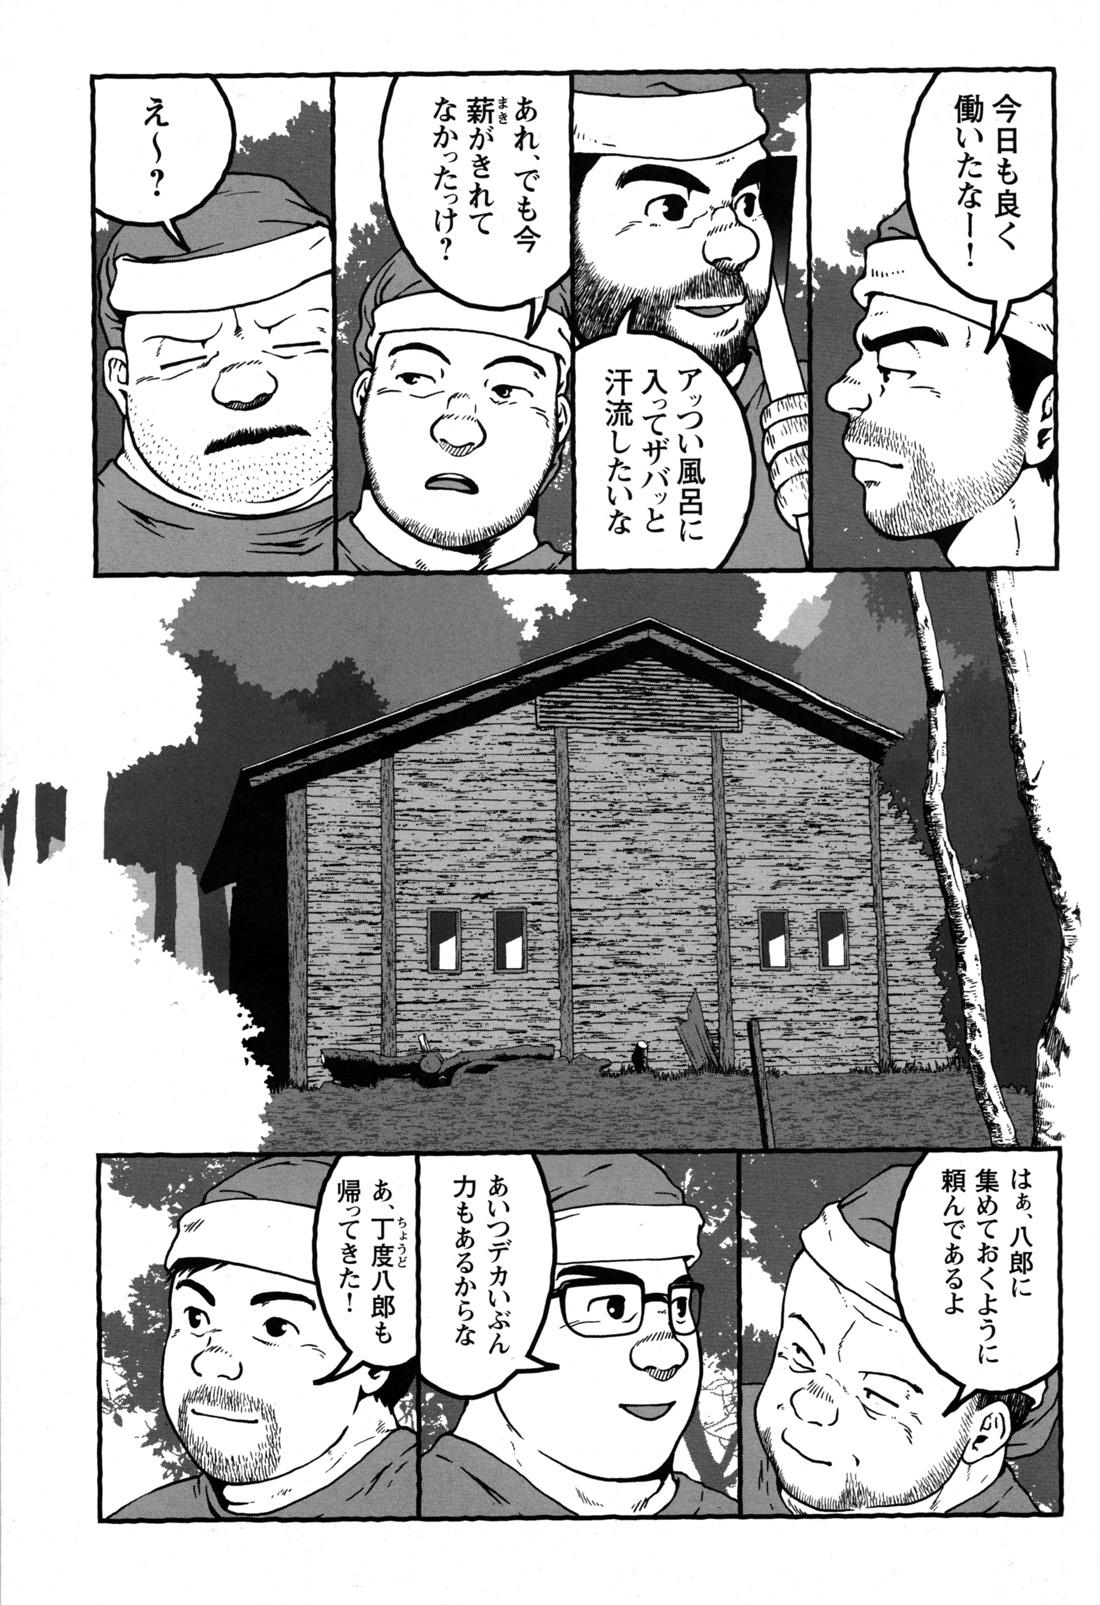 Comic G-men Gaho No.09 Gacchibi Zeme 131